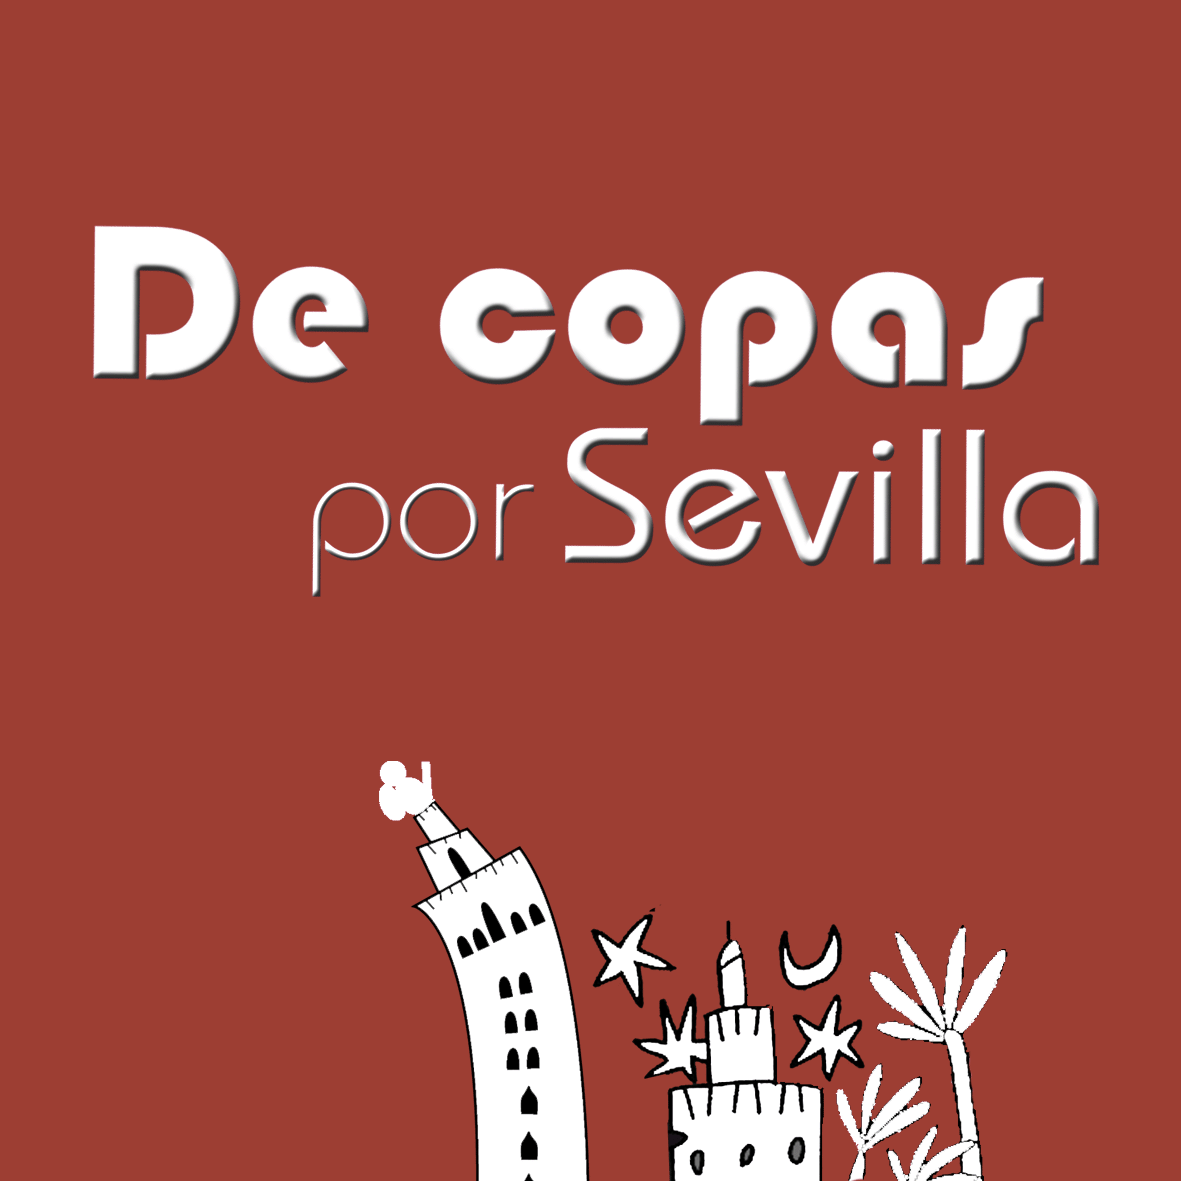 Aquí, todo sobre los mejores sitios de gastronomía y ocio en Sevilla. Tándem: @urbanofl & @PepeluArteSacro IG: https://t.co/lJqrJnjluN